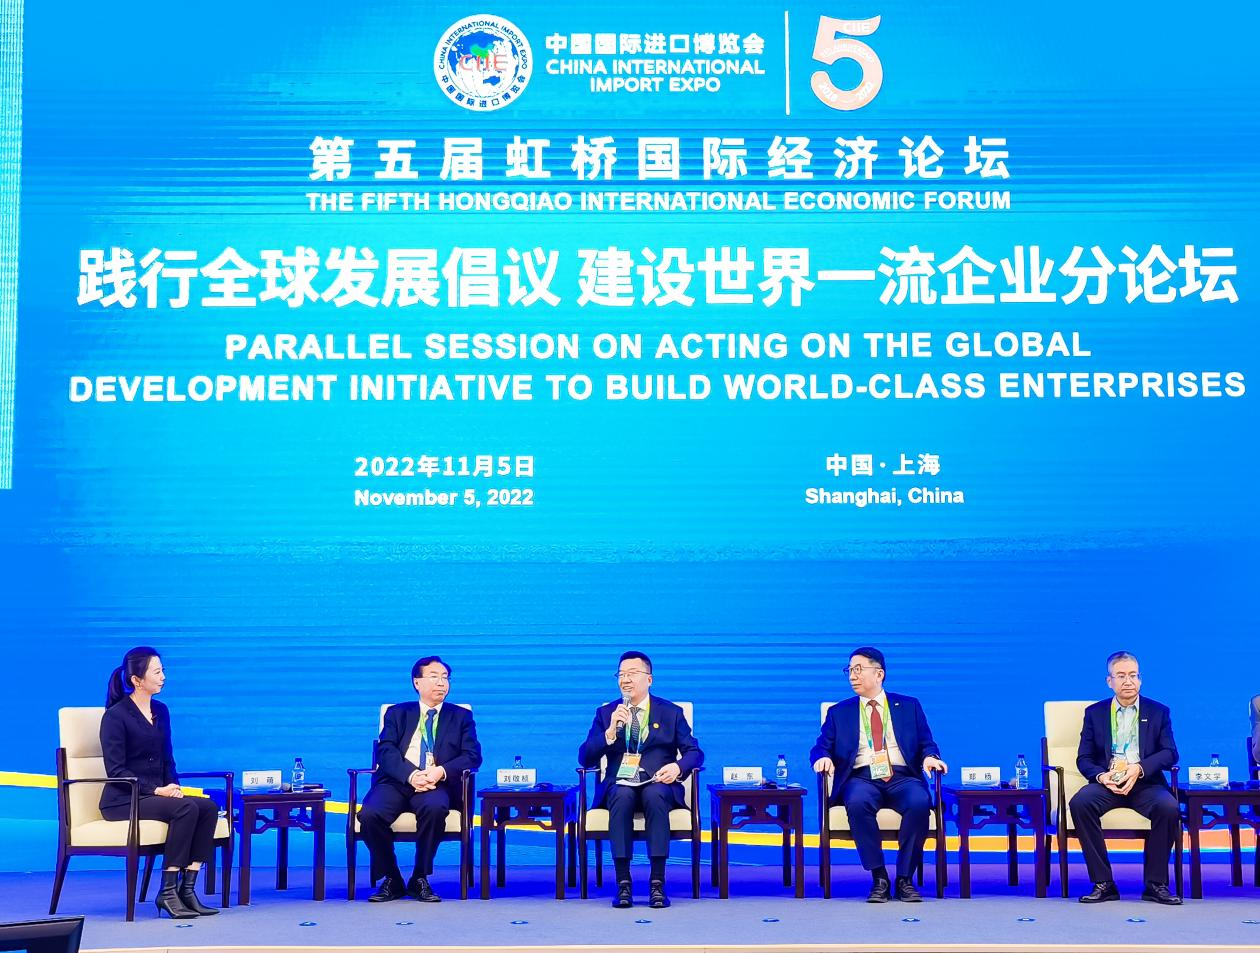 厦航受邀加入联合国全球契约组织 成为组织内唯一中国航空企业